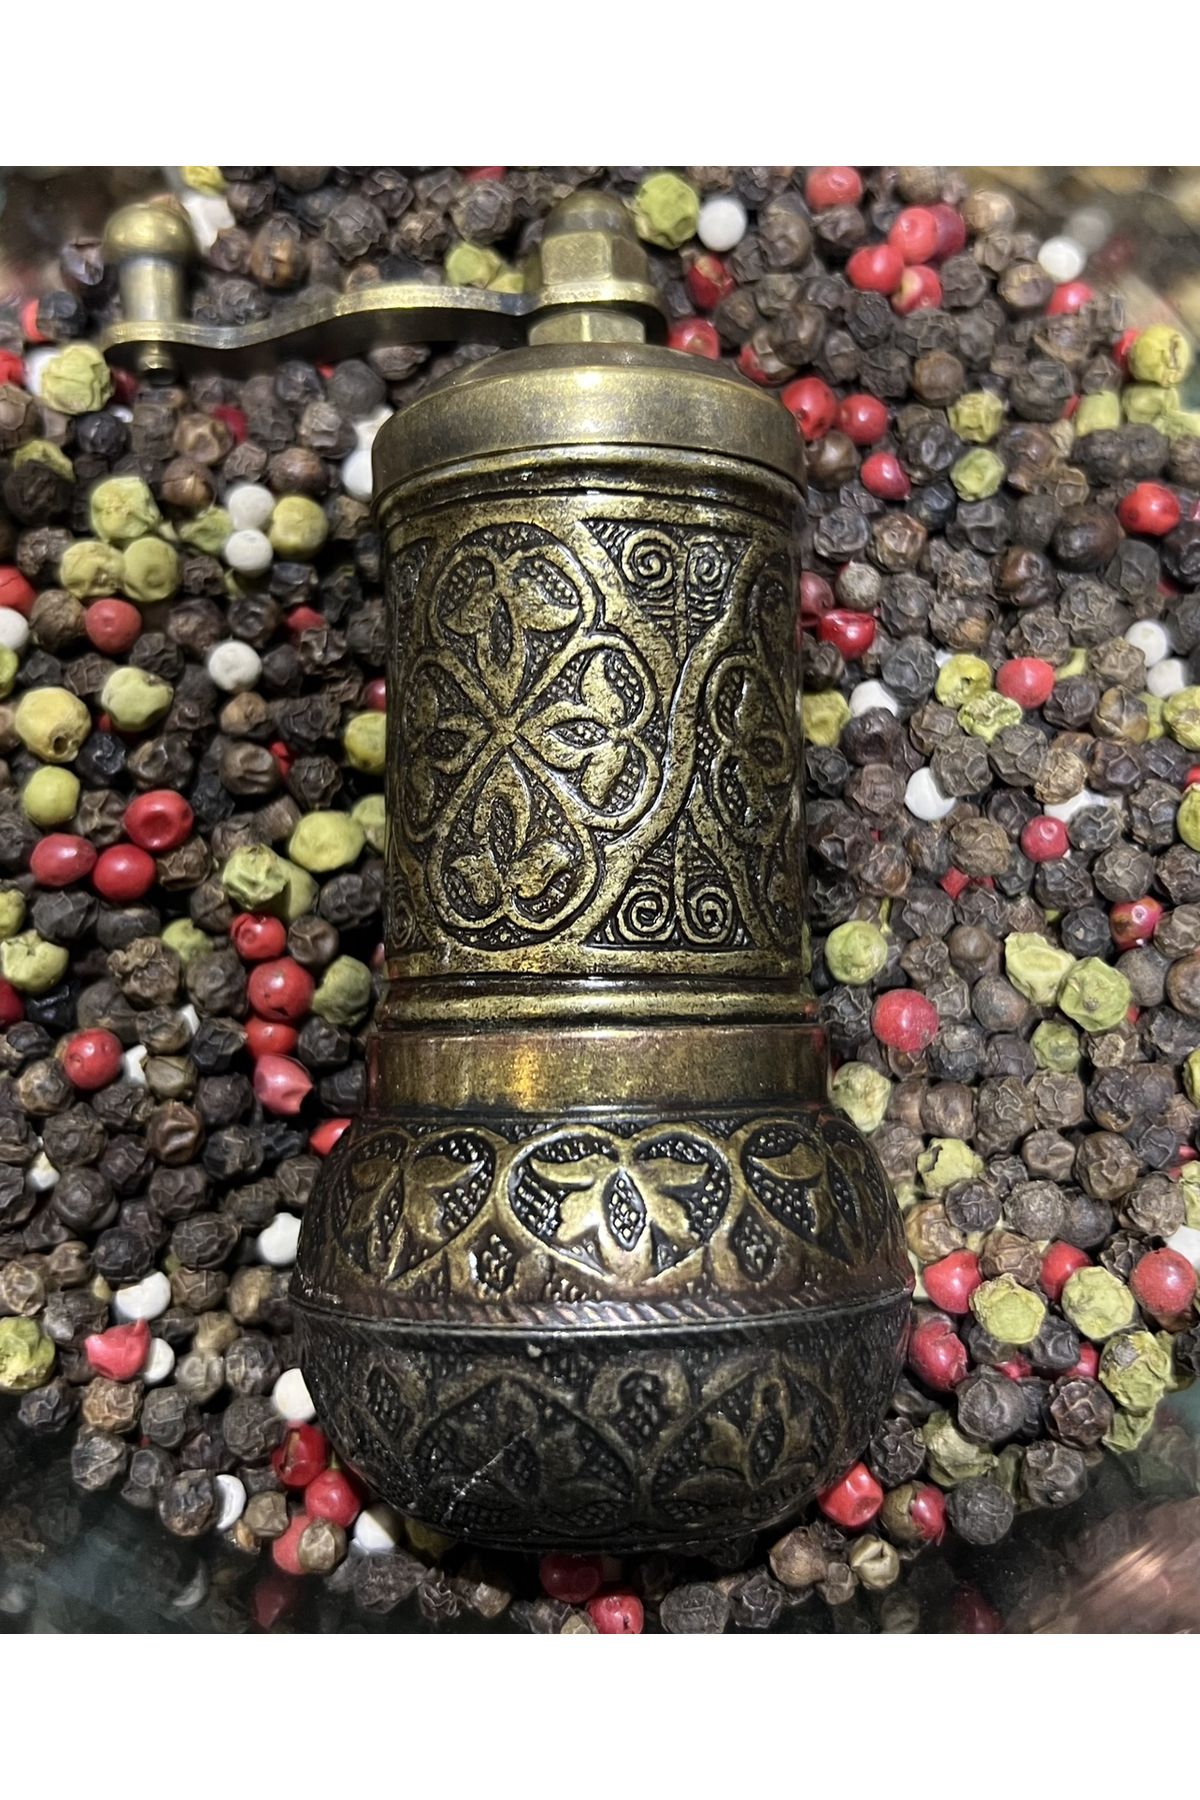 aslico Altın-Gümüş-Bakır-Pirinç Renkli Osmanlı Motifli Otantik El Yapımı Karabiber Tuz Kahve El Değirmeni